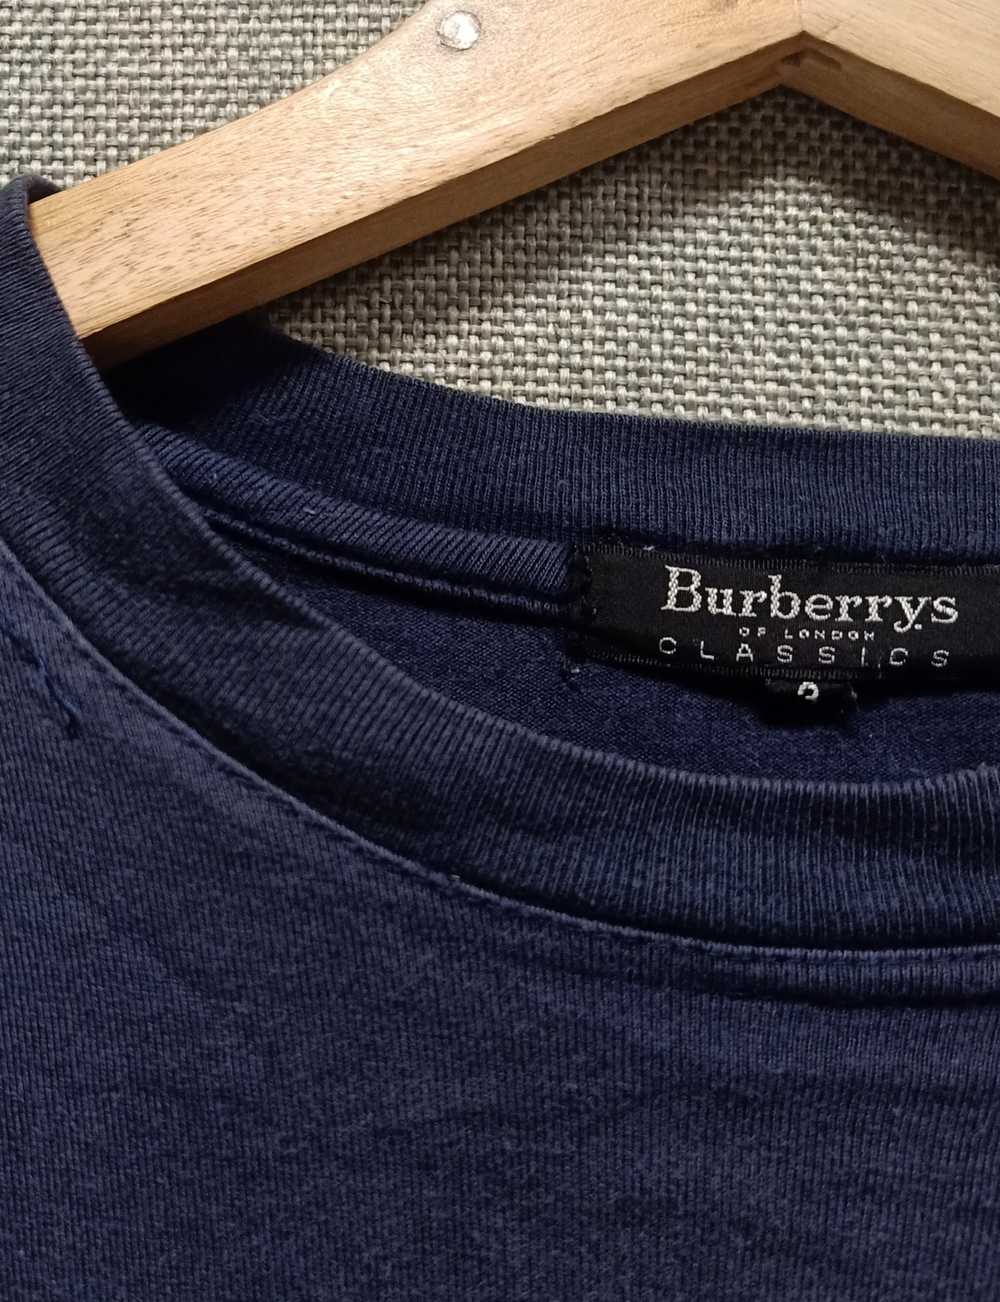 Burberry × Burberry Prorsum t shirt burberry made… - image 7